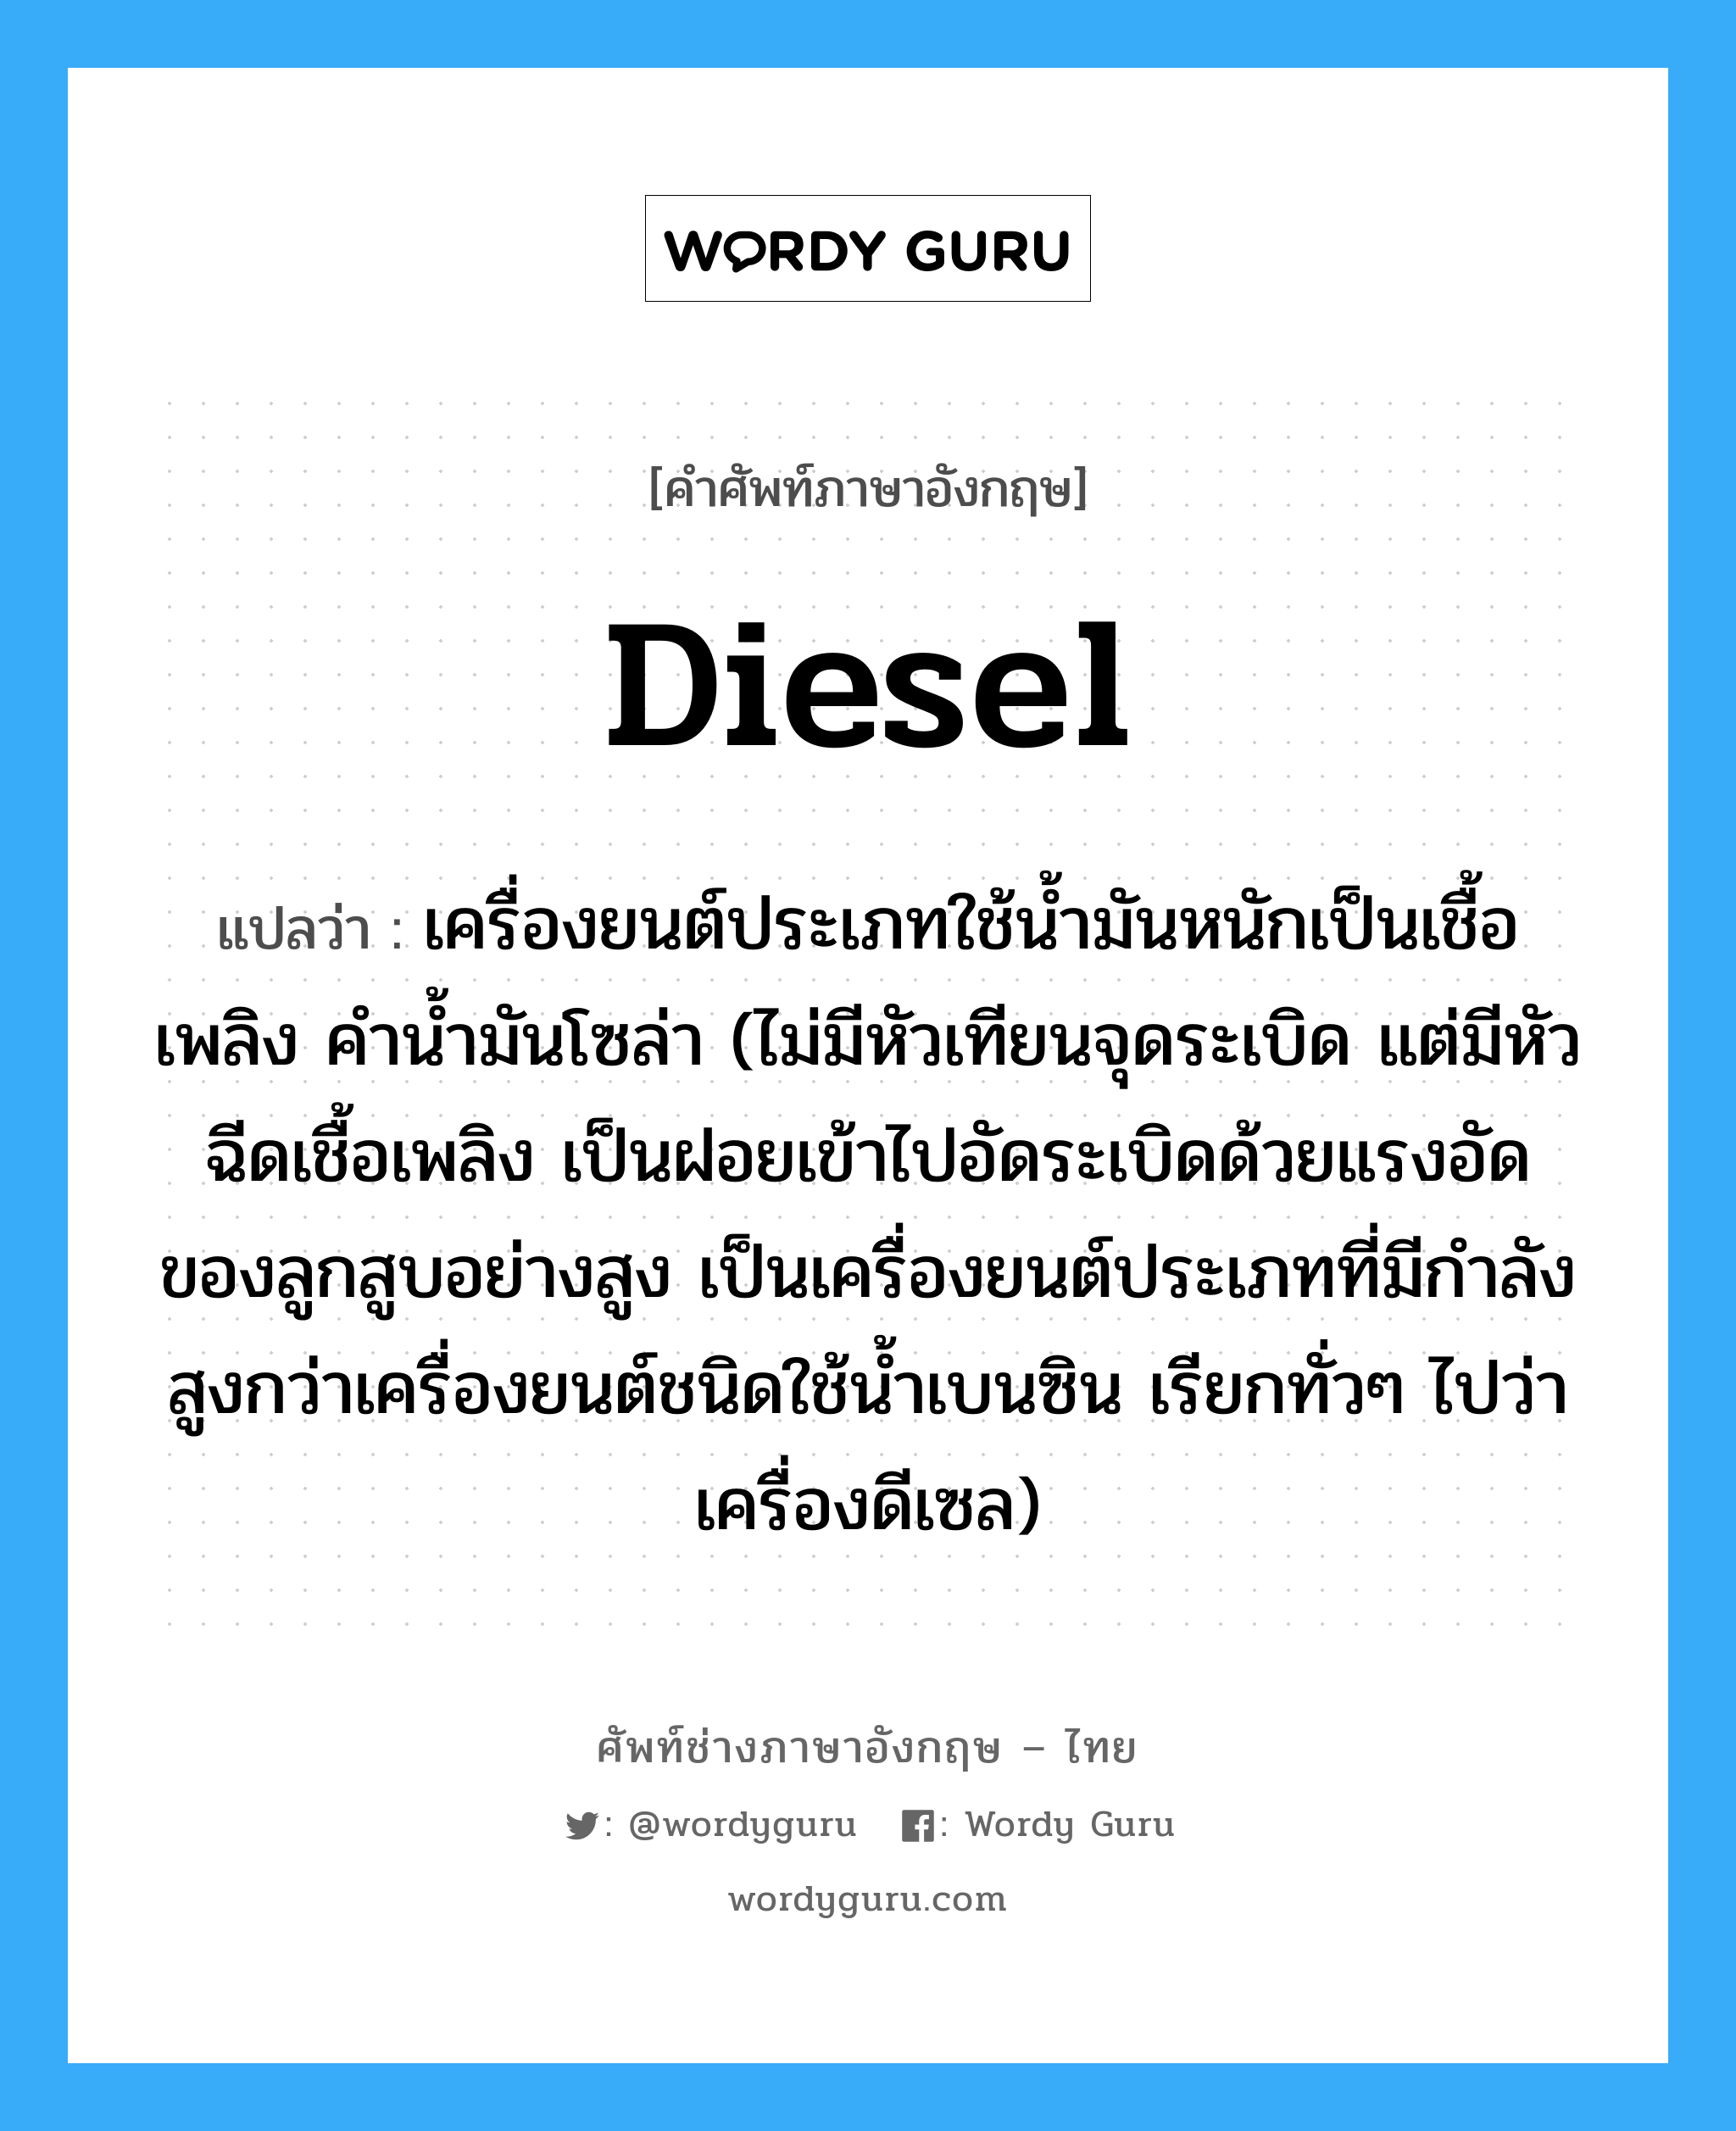 diesel แปลว่า?, คำศัพท์ช่างภาษาอังกฤษ - ไทย diesel คำศัพท์ภาษาอังกฤษ diesel แปลว่า เครื่องยนต์ประเภทใช้น้ำมันหนักเป็นเชื้อเพลิง คำน้ำมันโซล่า (ไม่มีหัวเทียนจุดระเบิด แต่มีหัวฉีดเชื้อเพลิง เป็นฝอยเข้าไปอัดระเบิดด้วยแรงอัดของลูกสูบอย่างสูง เป็นเครื่องยนต์ประเภทที่มีกำลังสูงกว่าเครื่องยนต์ชนิดใช้น้ำเบนซิน เรียกทั่วๆ ไปว่า เครื่องดีเซล)